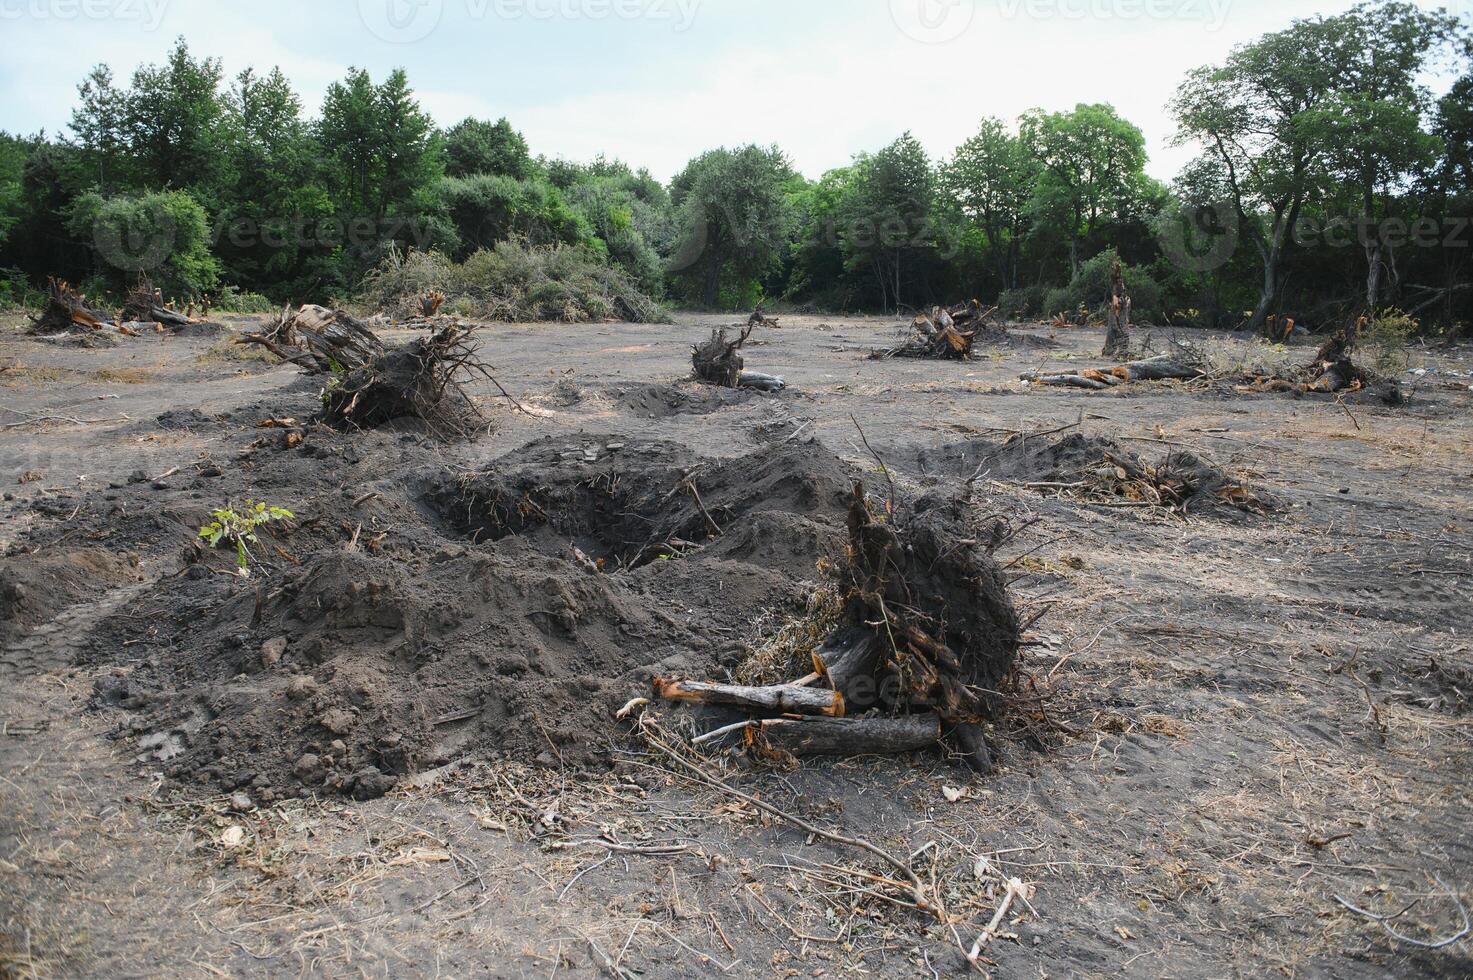 avskogning miljö- problem, regn skog förstörd för olja handflatan plantager foto